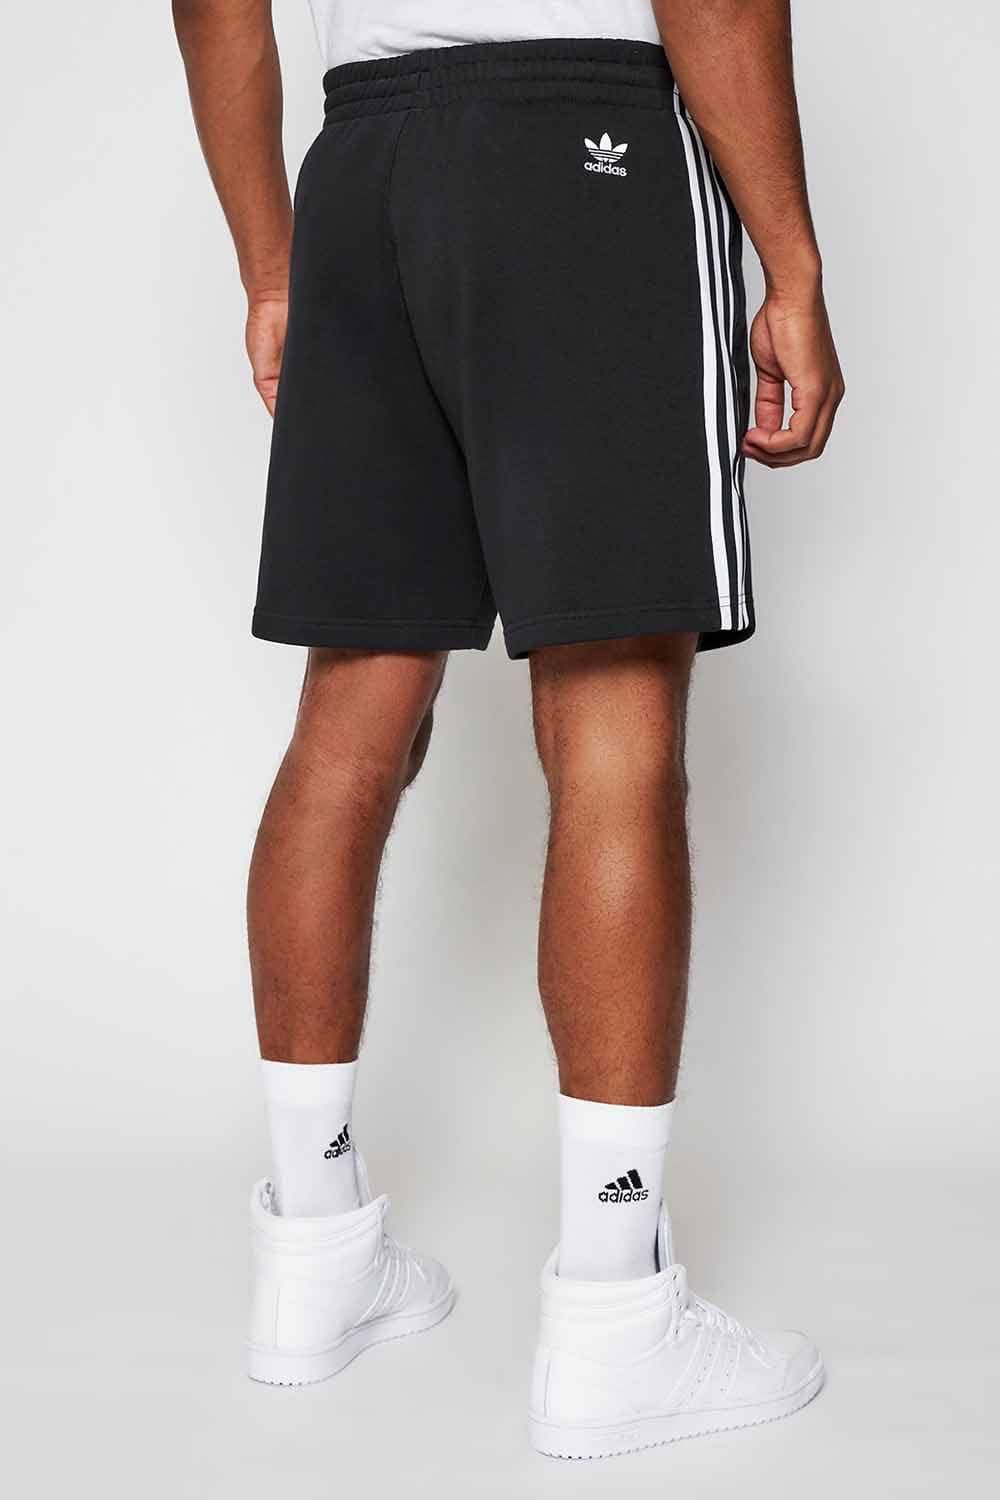 Adidas памучни панталонки